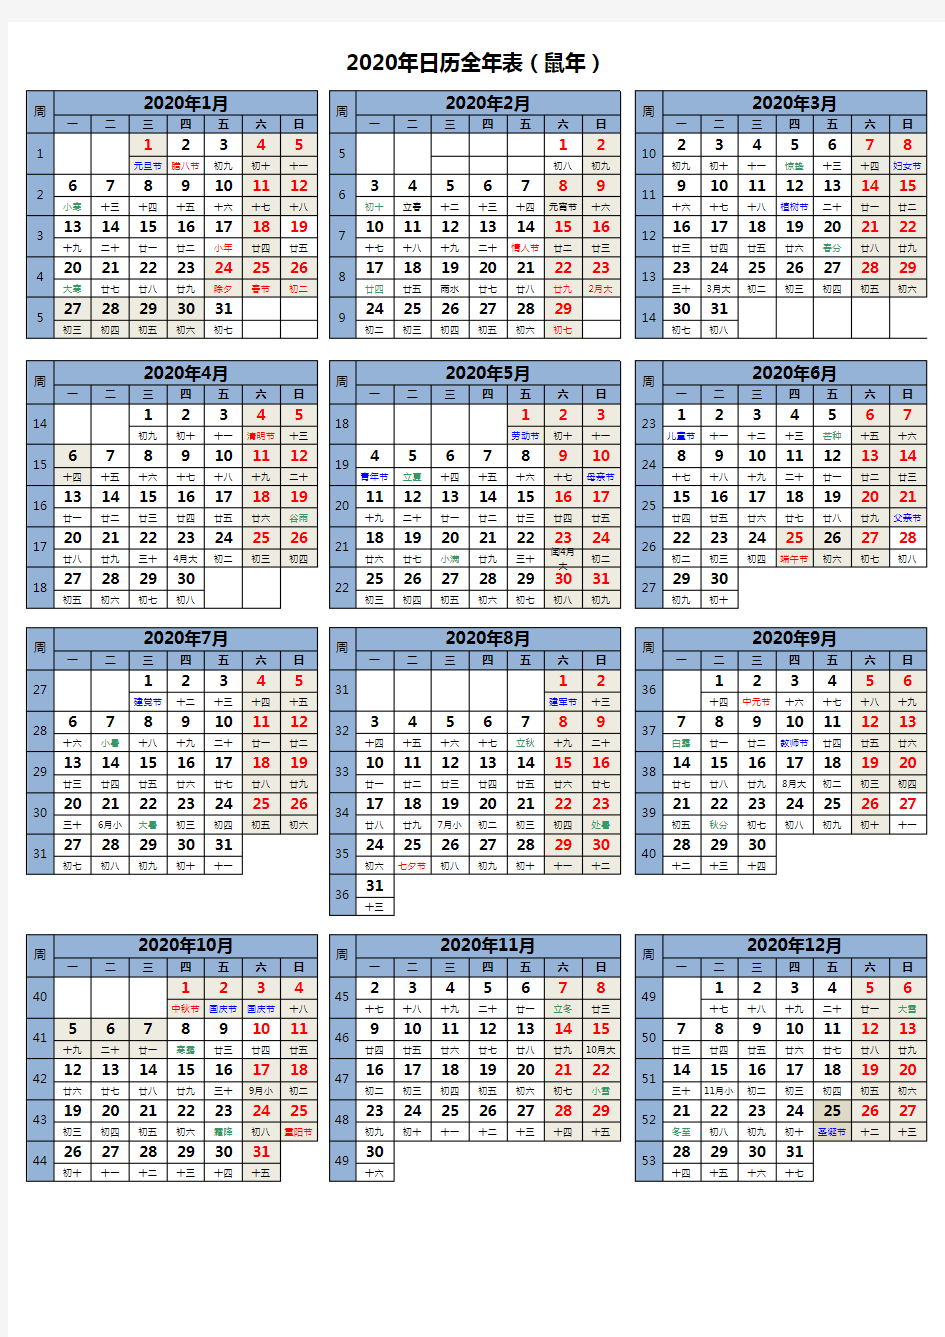 2020年日历全年表(A4纸可打印版)